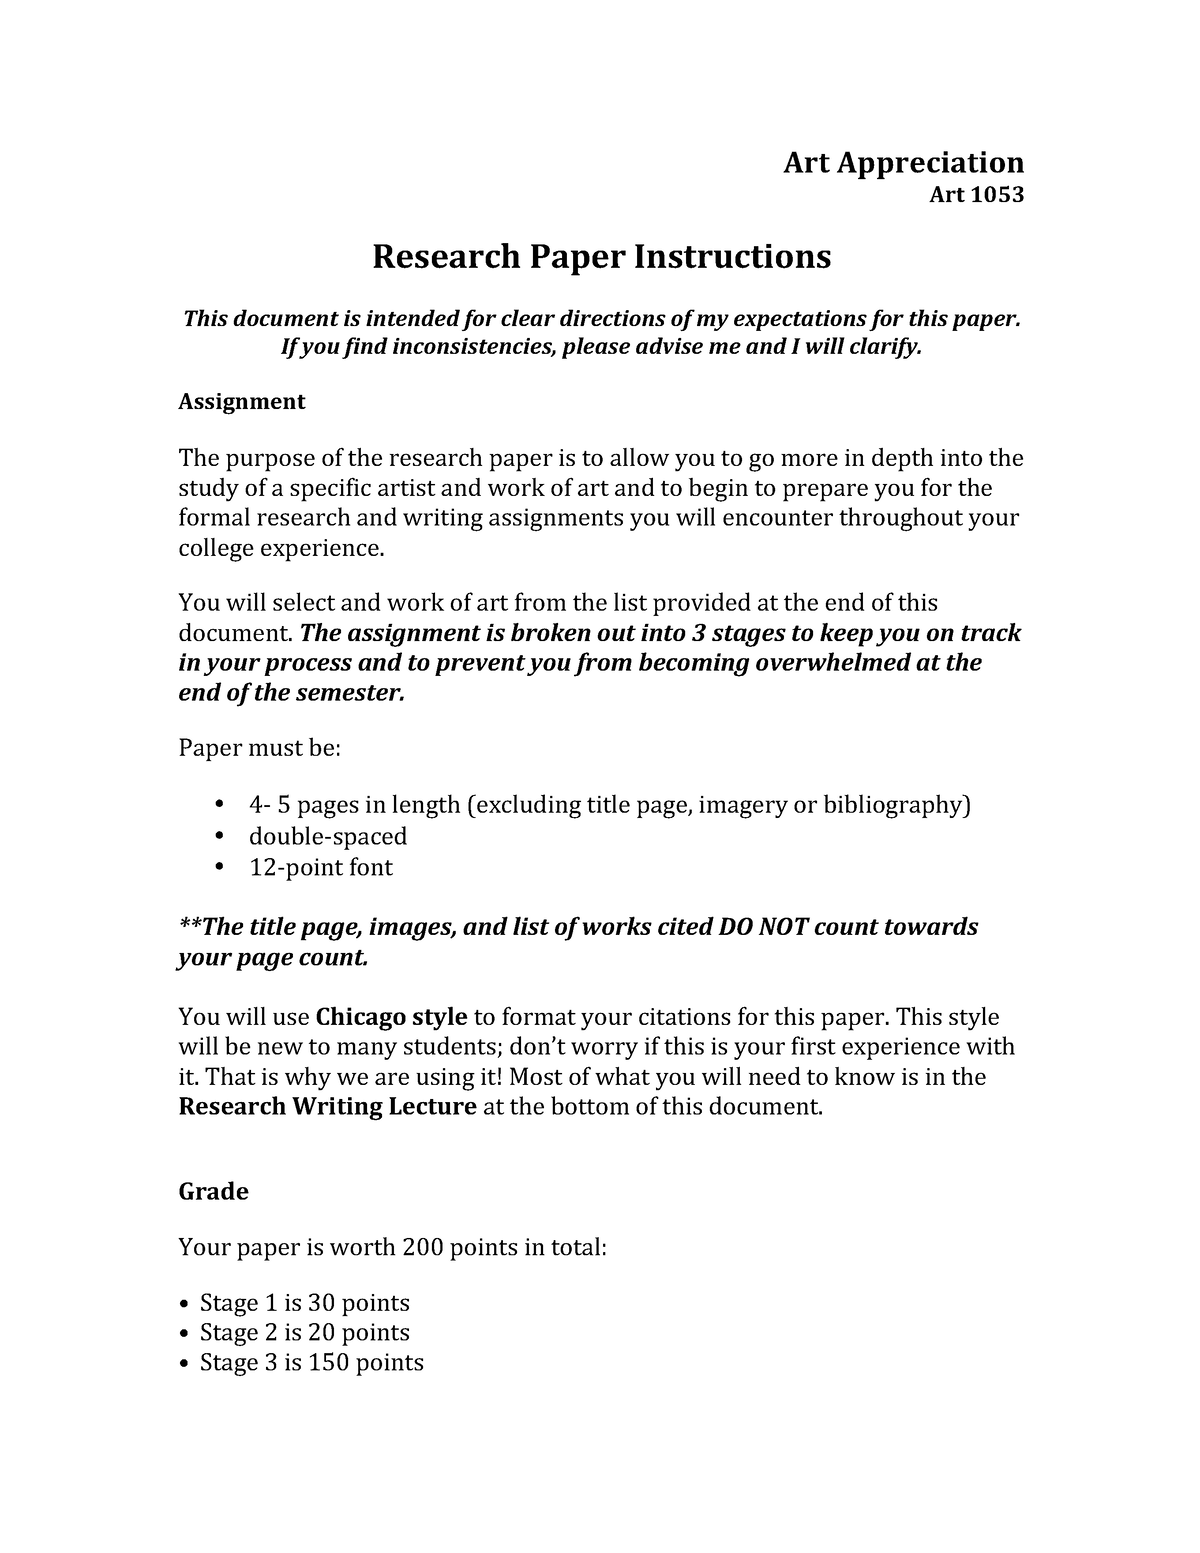 art appreciation research paper